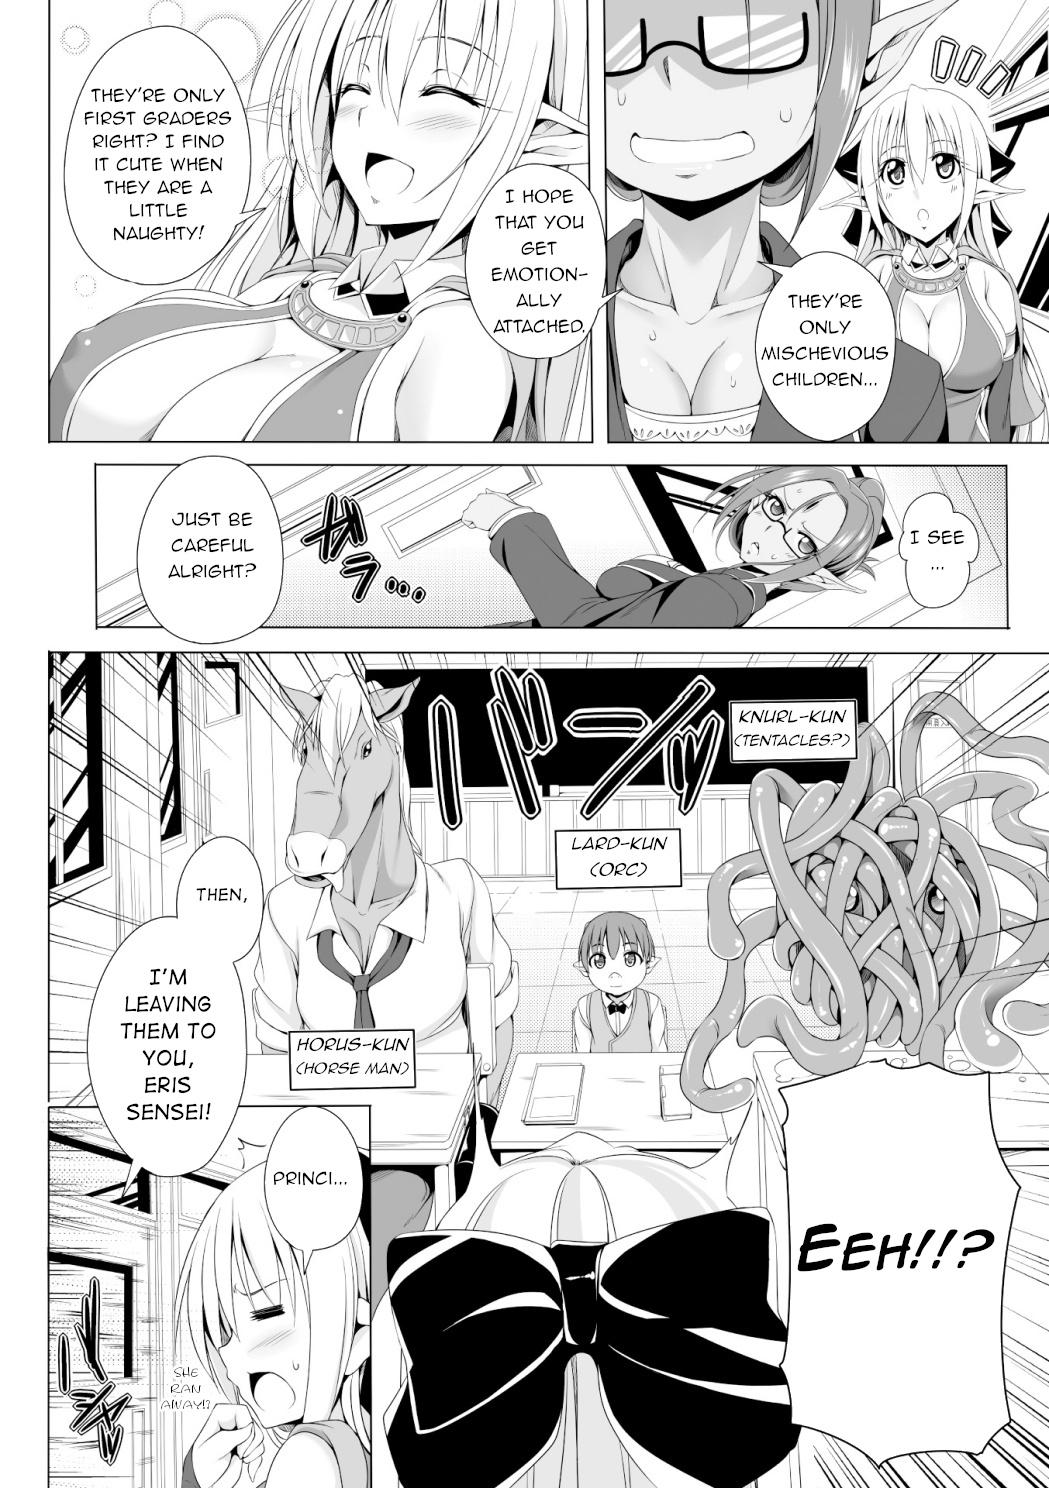 Pawg Eris Sensei no Gakkyuu Houkai | Eris Sensei's Classrom Breakdown Str8 - Page 2